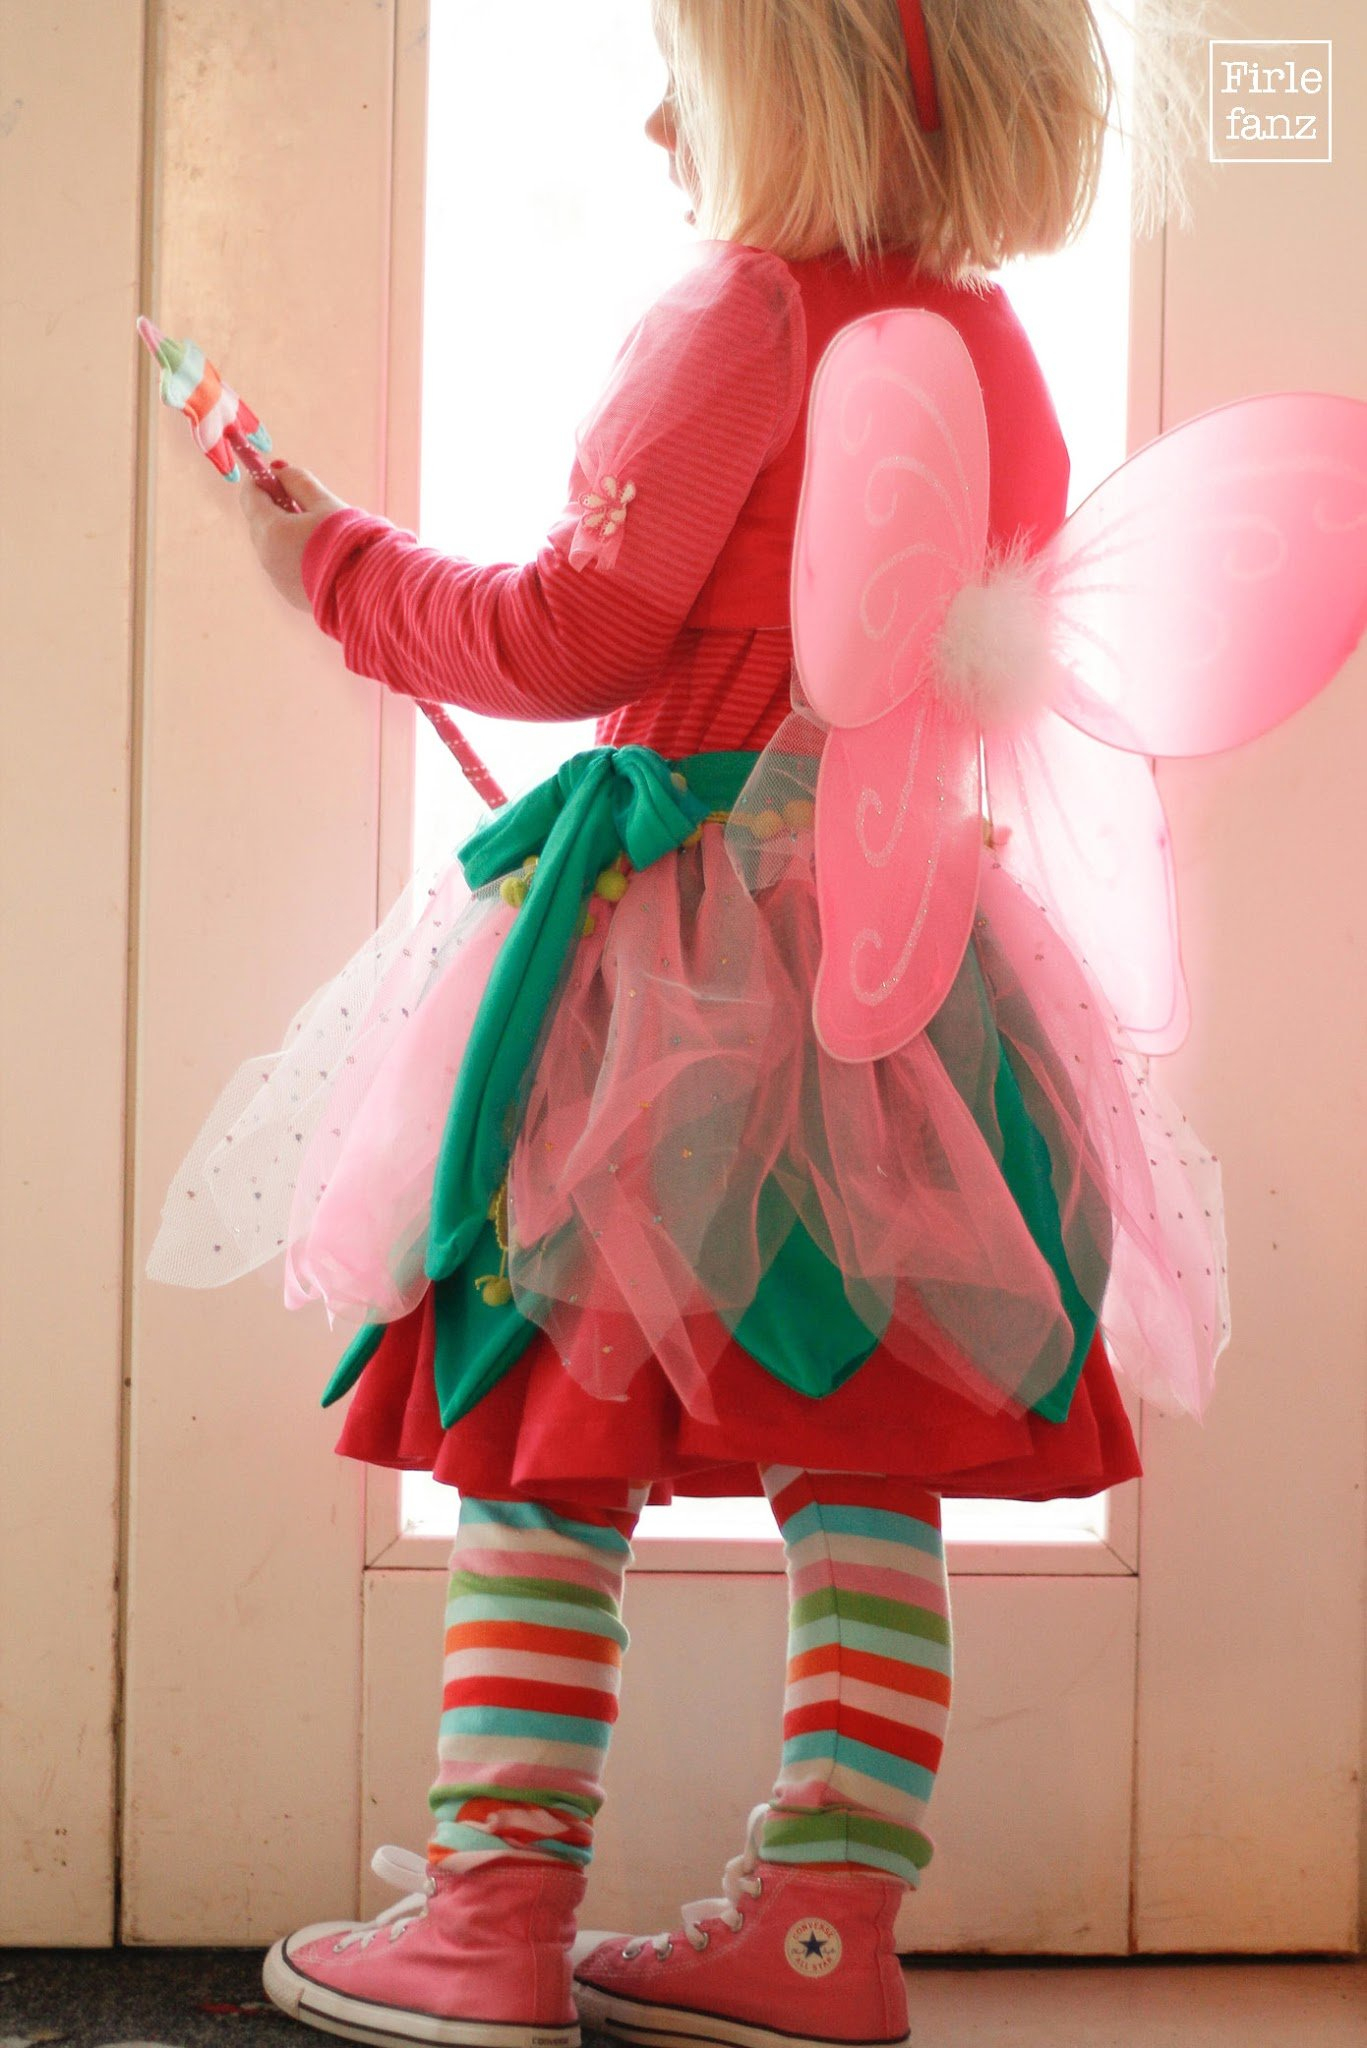 Darf Ich Vorstellen? Prinzessin Lillifee | Firlefanz Blog mit Prinzessin Lillifee Kostüm Für Erwachsene